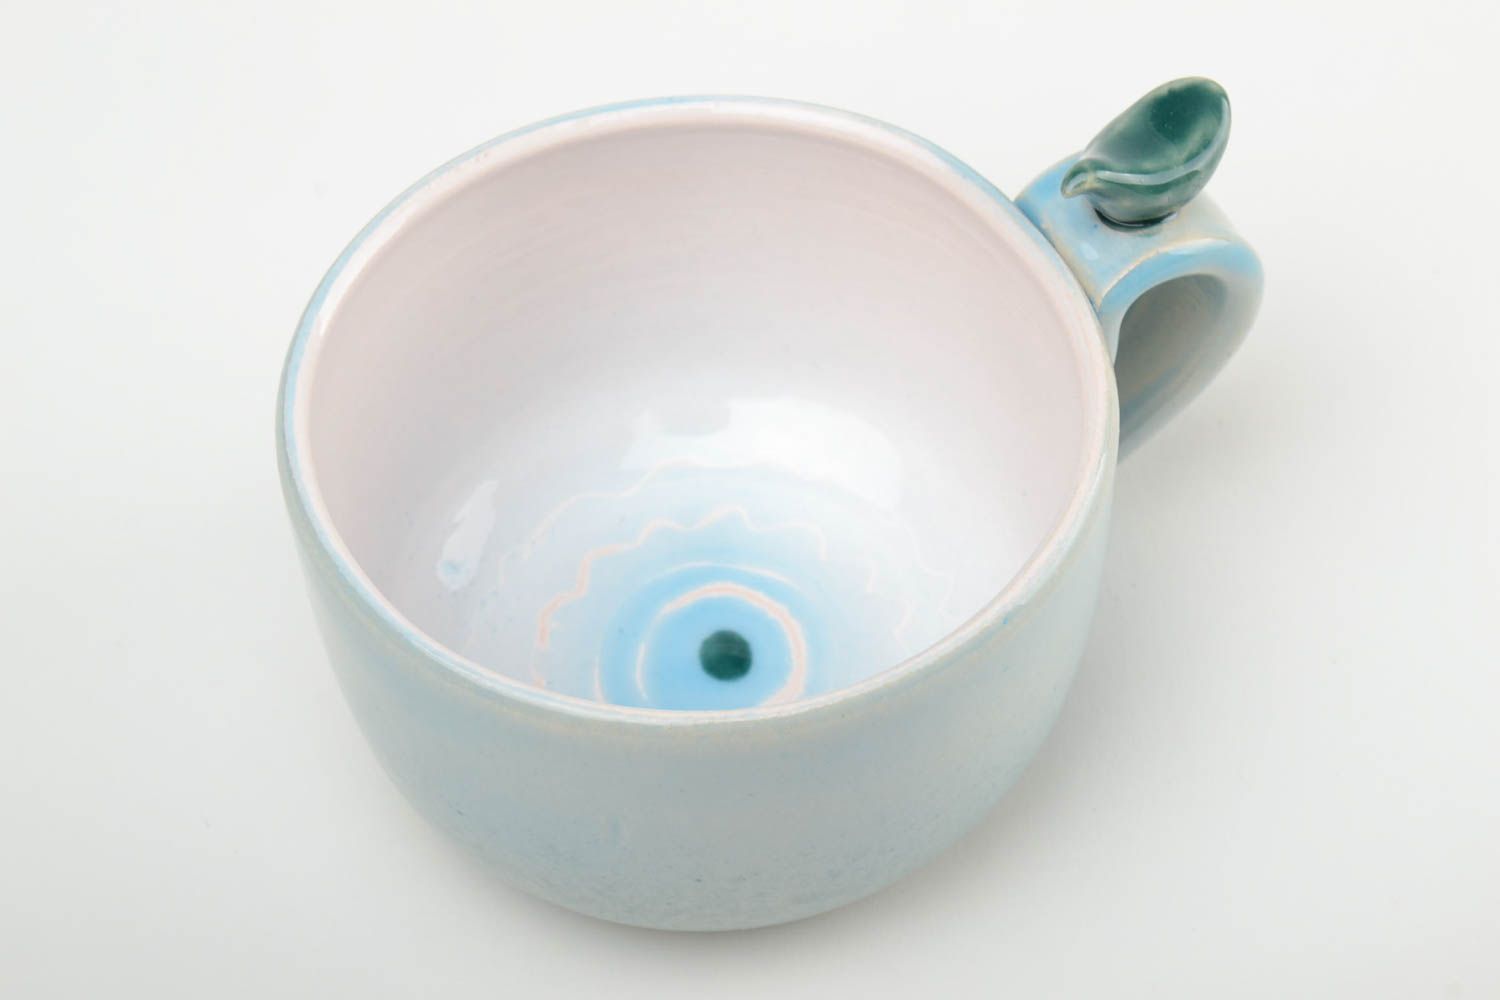 Голубая чашка ручной работы из глины расписанная глазурью и эмалью 300 мл фото 2